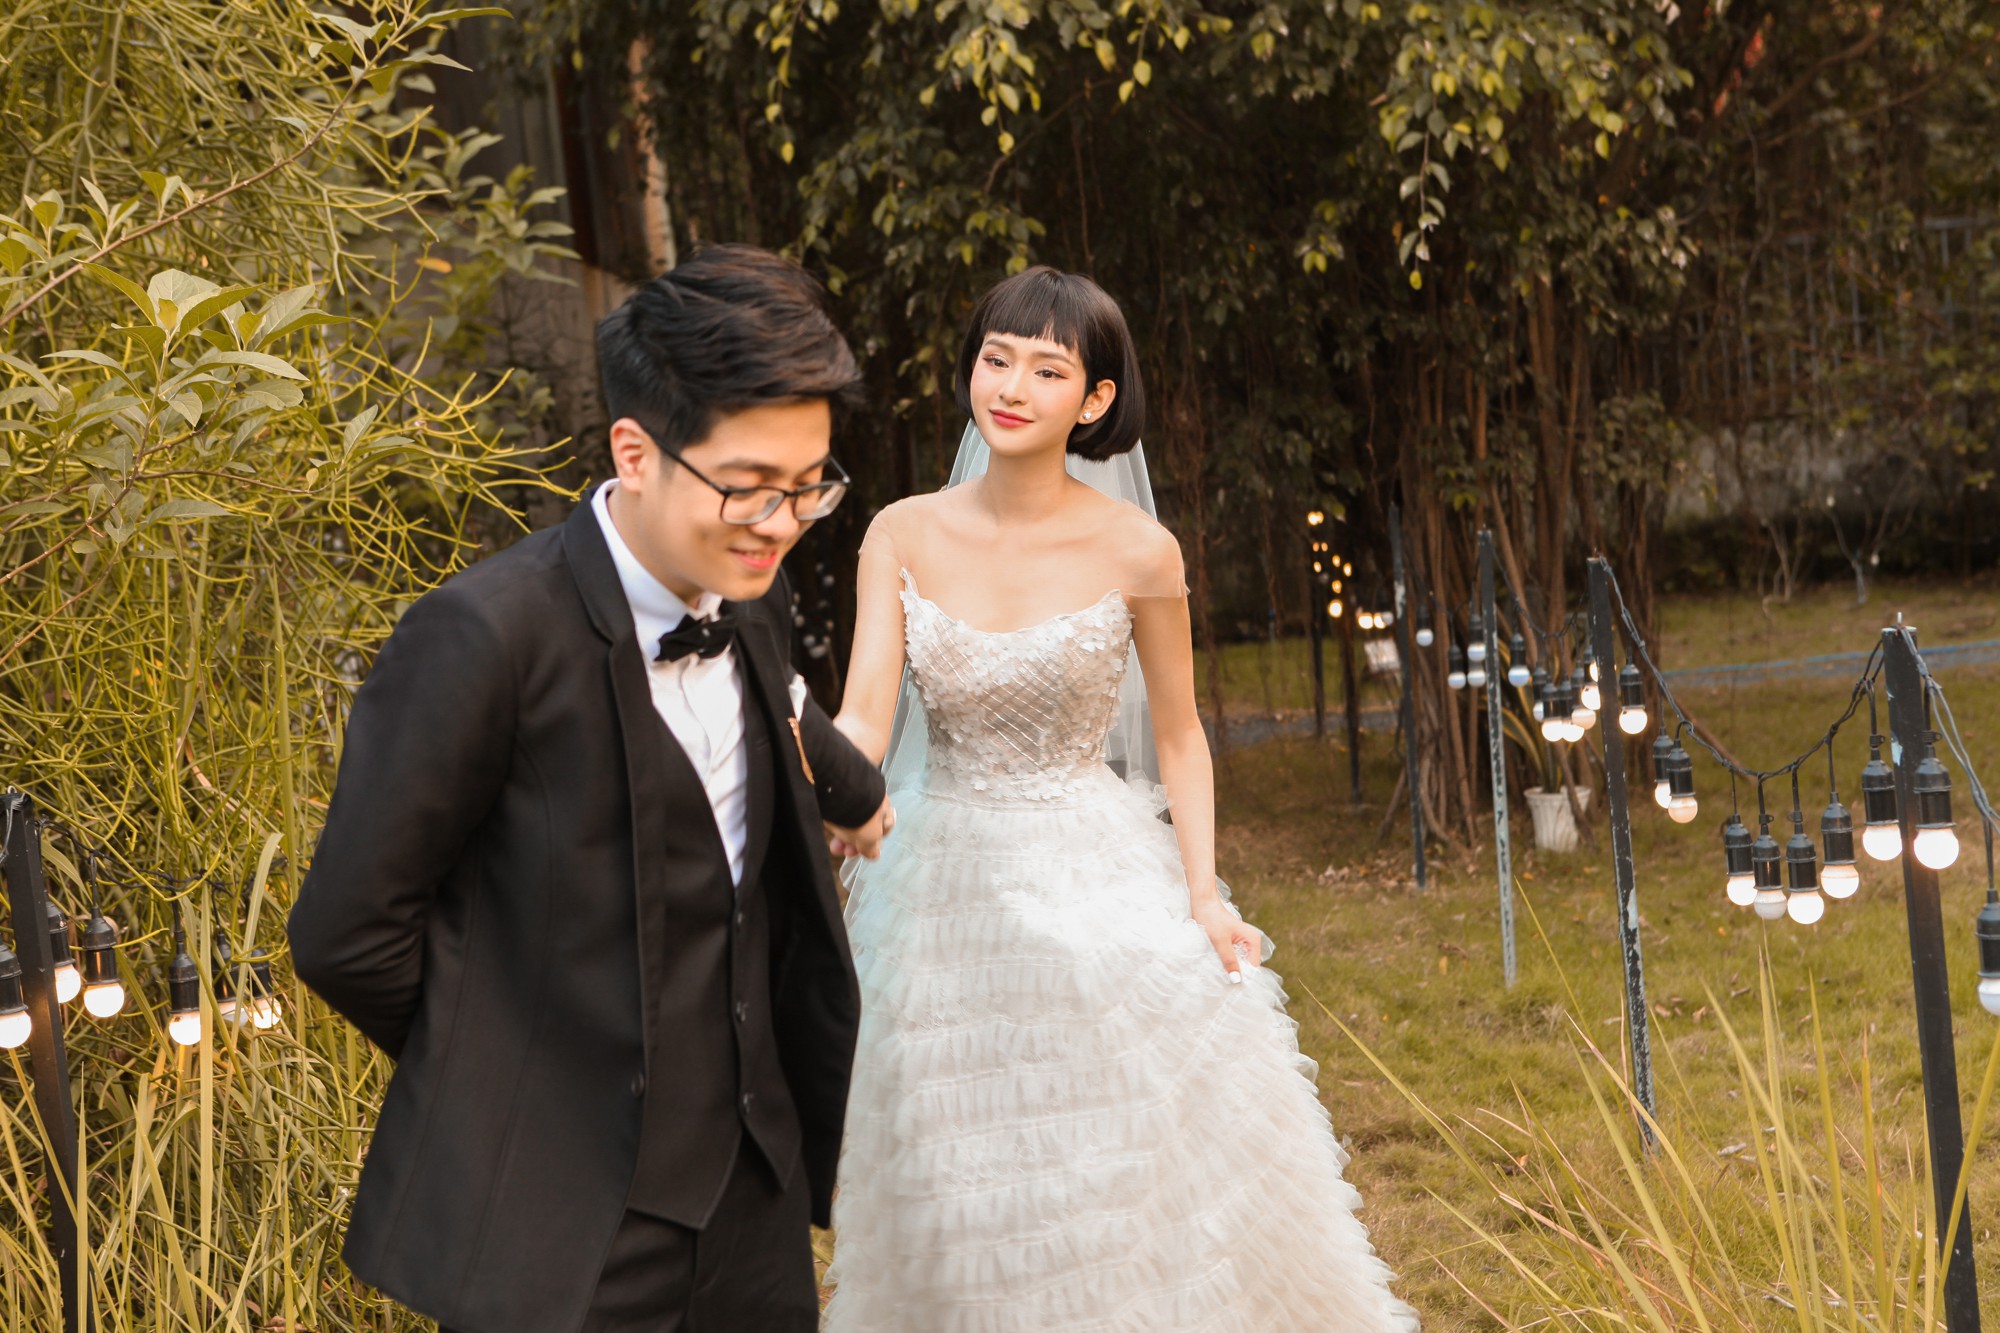 Nếu bạn đang tìm kiếm ý tưởng cho bức ảnh cưới của mình, hãy đến và xem album ảnh cưới độc đáo của Nhung Tuấn và cô dâu xinh đẹp. Chia sẻ khoảnh khắc ngọt ngào và lãng mạn tại những địa điểm đẹp nhất trong đám cưới của họ.